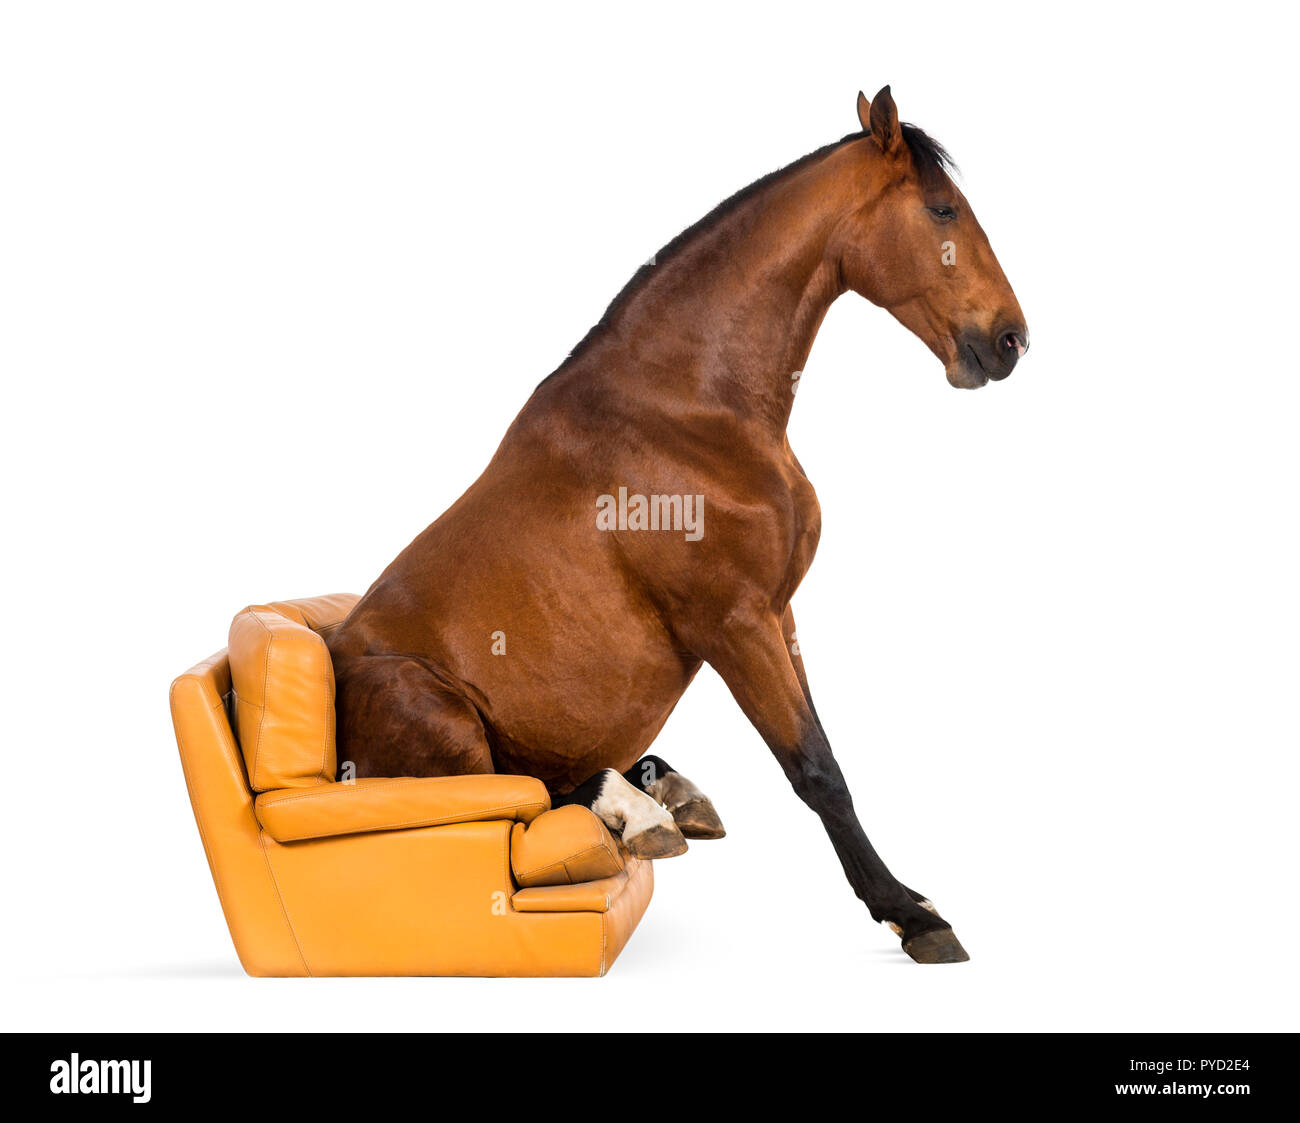 Cheval andalou assis sur un fauteuil Banque D'Images